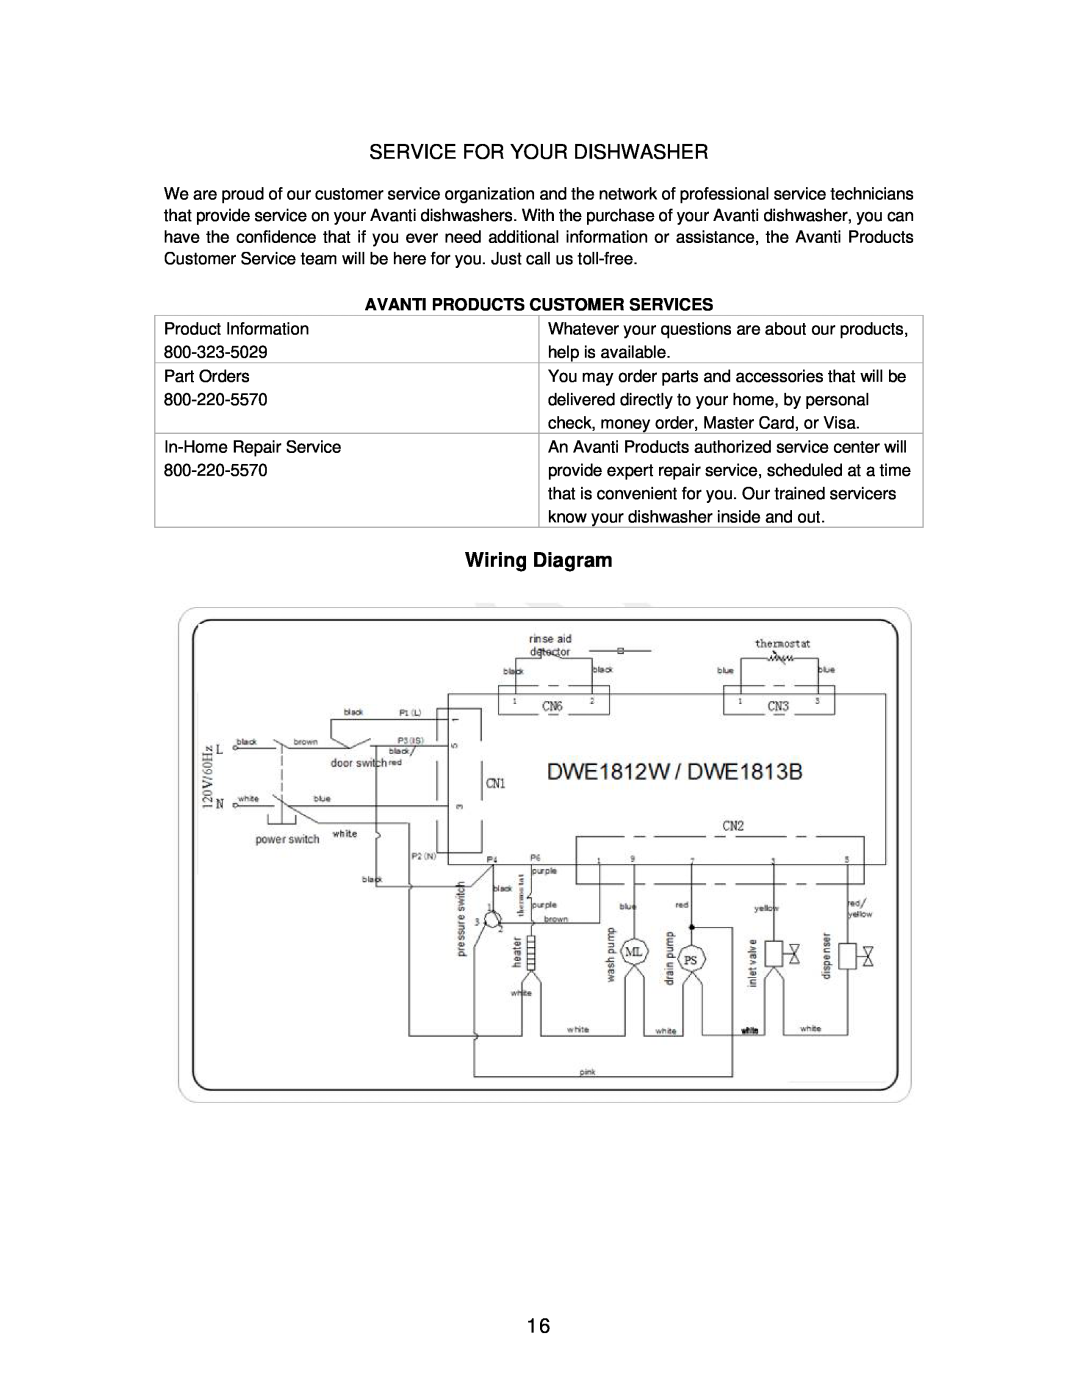 Avanti DWE1813B, DWE1812W instruction manual Service For Your Dishwasher, Wiring Diagram 